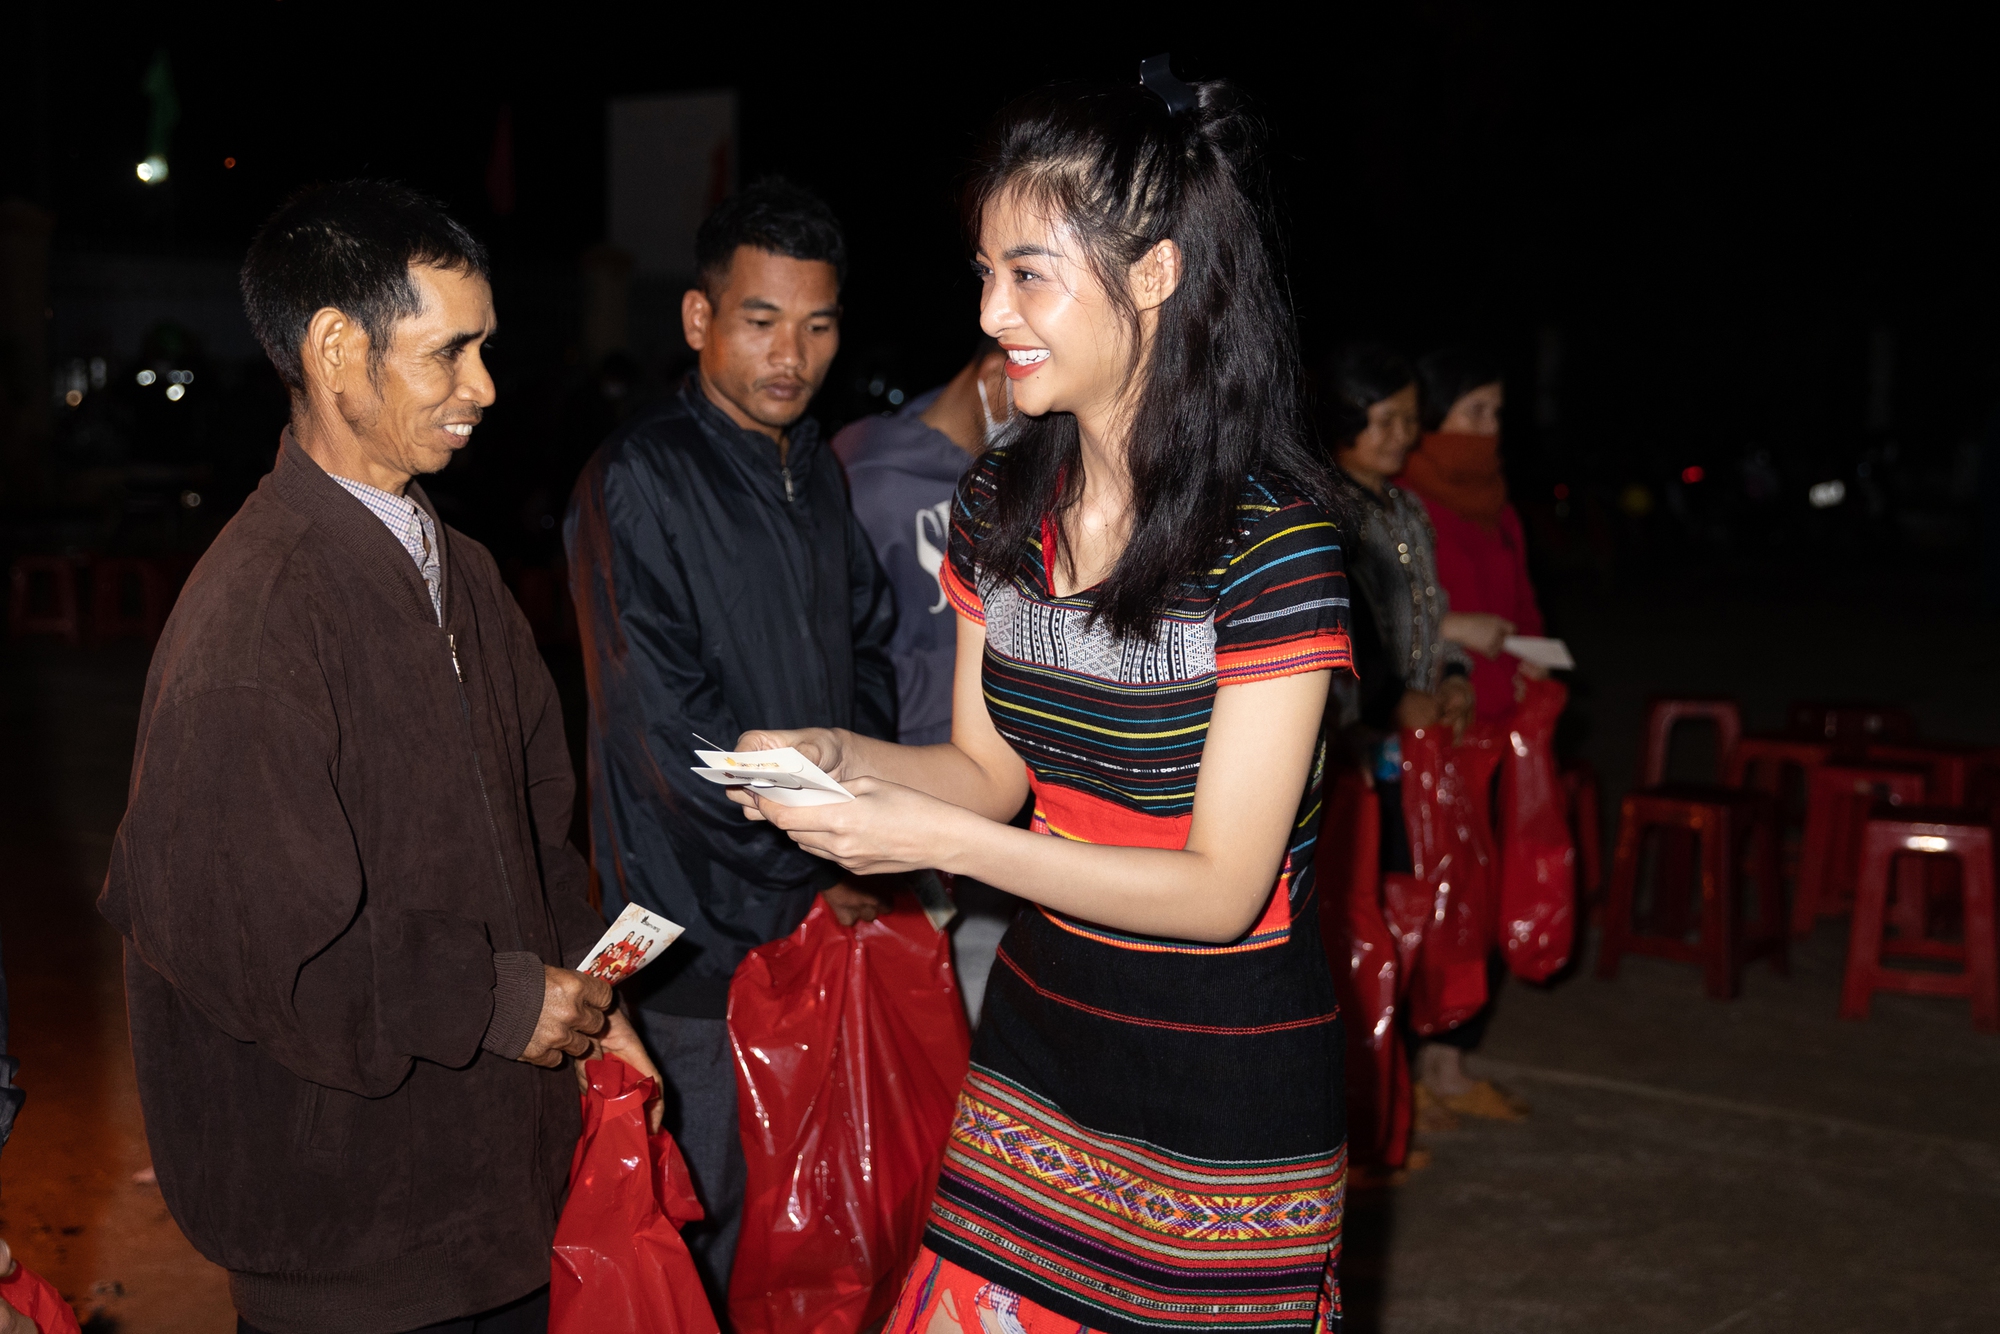 Diện đồ truyền thống của dân tộc Ê đê, Á hậu Lona Kiều Loan đi từ thiện tại Đắk Lắk - Ảnh 2.